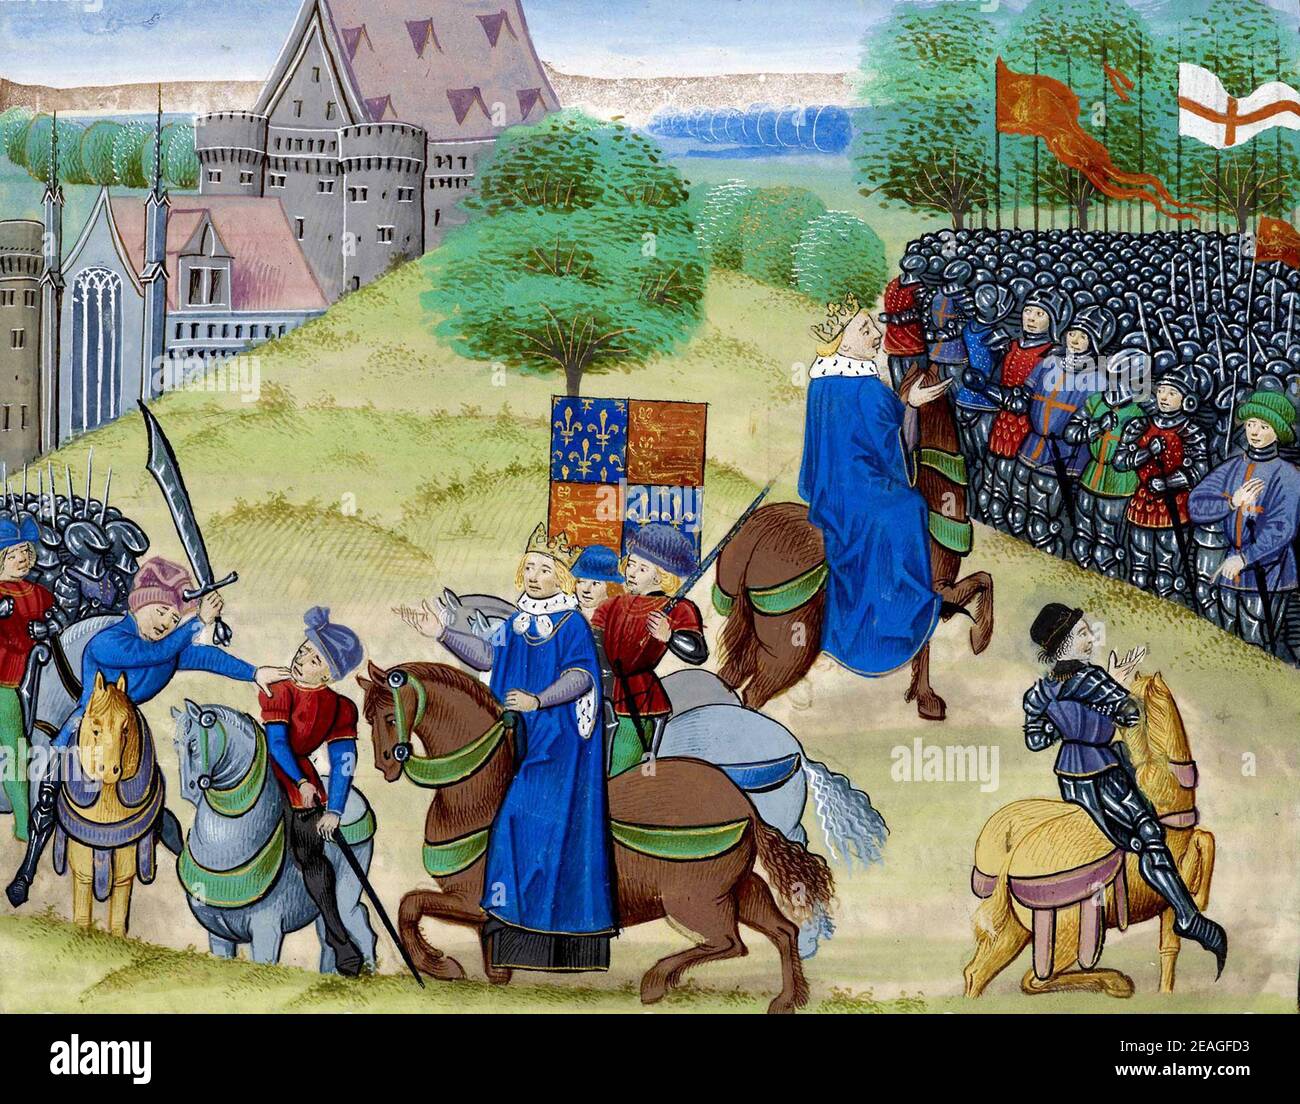 La mort de Wat Tyler, Walter « Wat » Tyler (1341 – 1381), chef de la révolte des paysans de 1381 en Angleterre. Il a défilé un groupe de rebelles de Canterbury à Londres pour s'opposer à l'institution d'une taxe de vote et pour exiger des réformes économiques et sociales. Alors que la brève rébellion a connu un succès précoce, Tyler a été tué par des officiers loyaux au roi Richard II lors des négociations à Smithfield, Londres. Banque D'Images